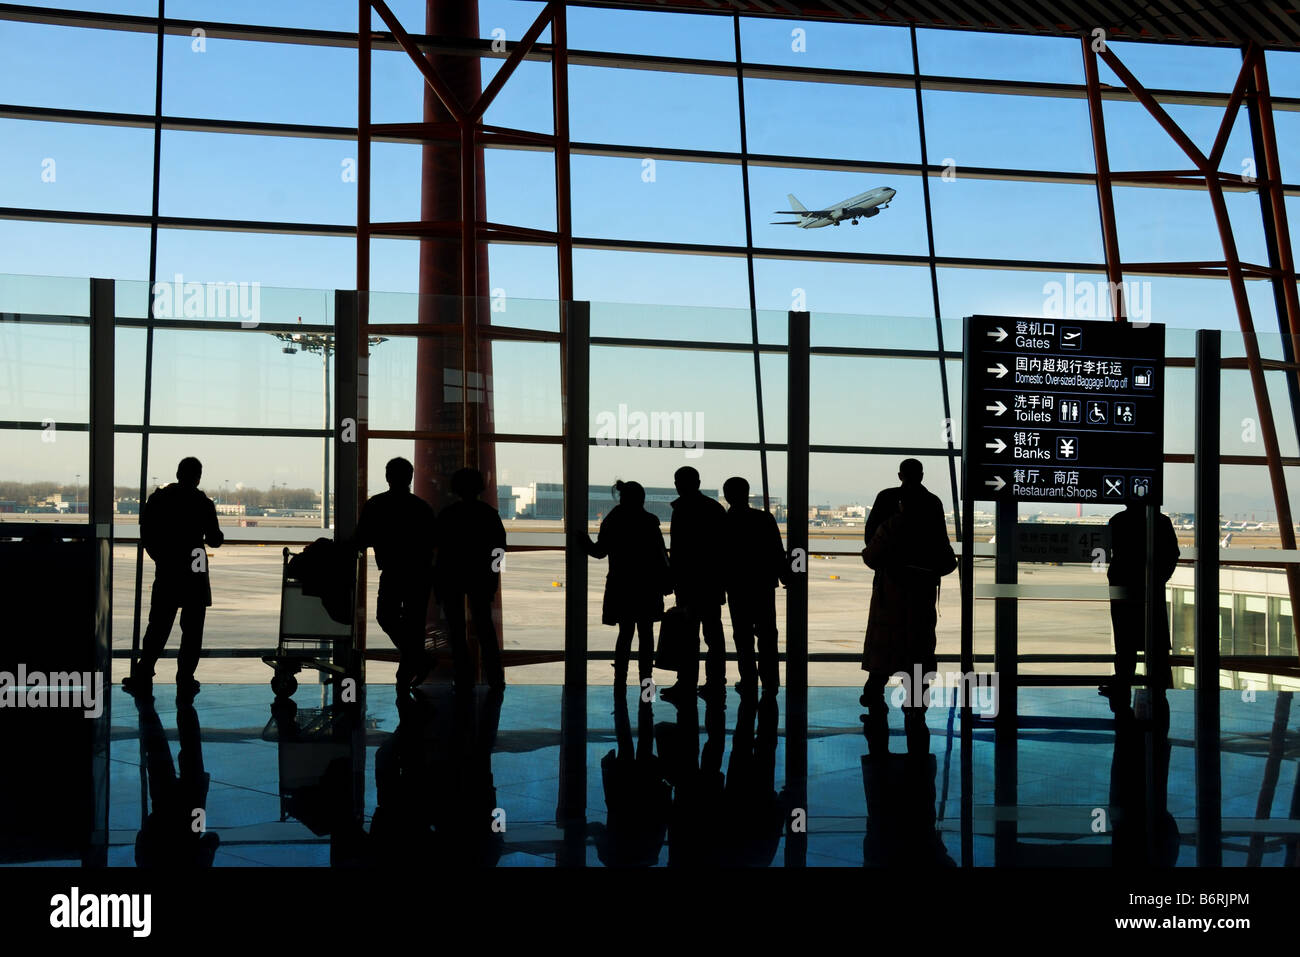 Les voyageurs à l'aéroport silhouettes Banque D'Images